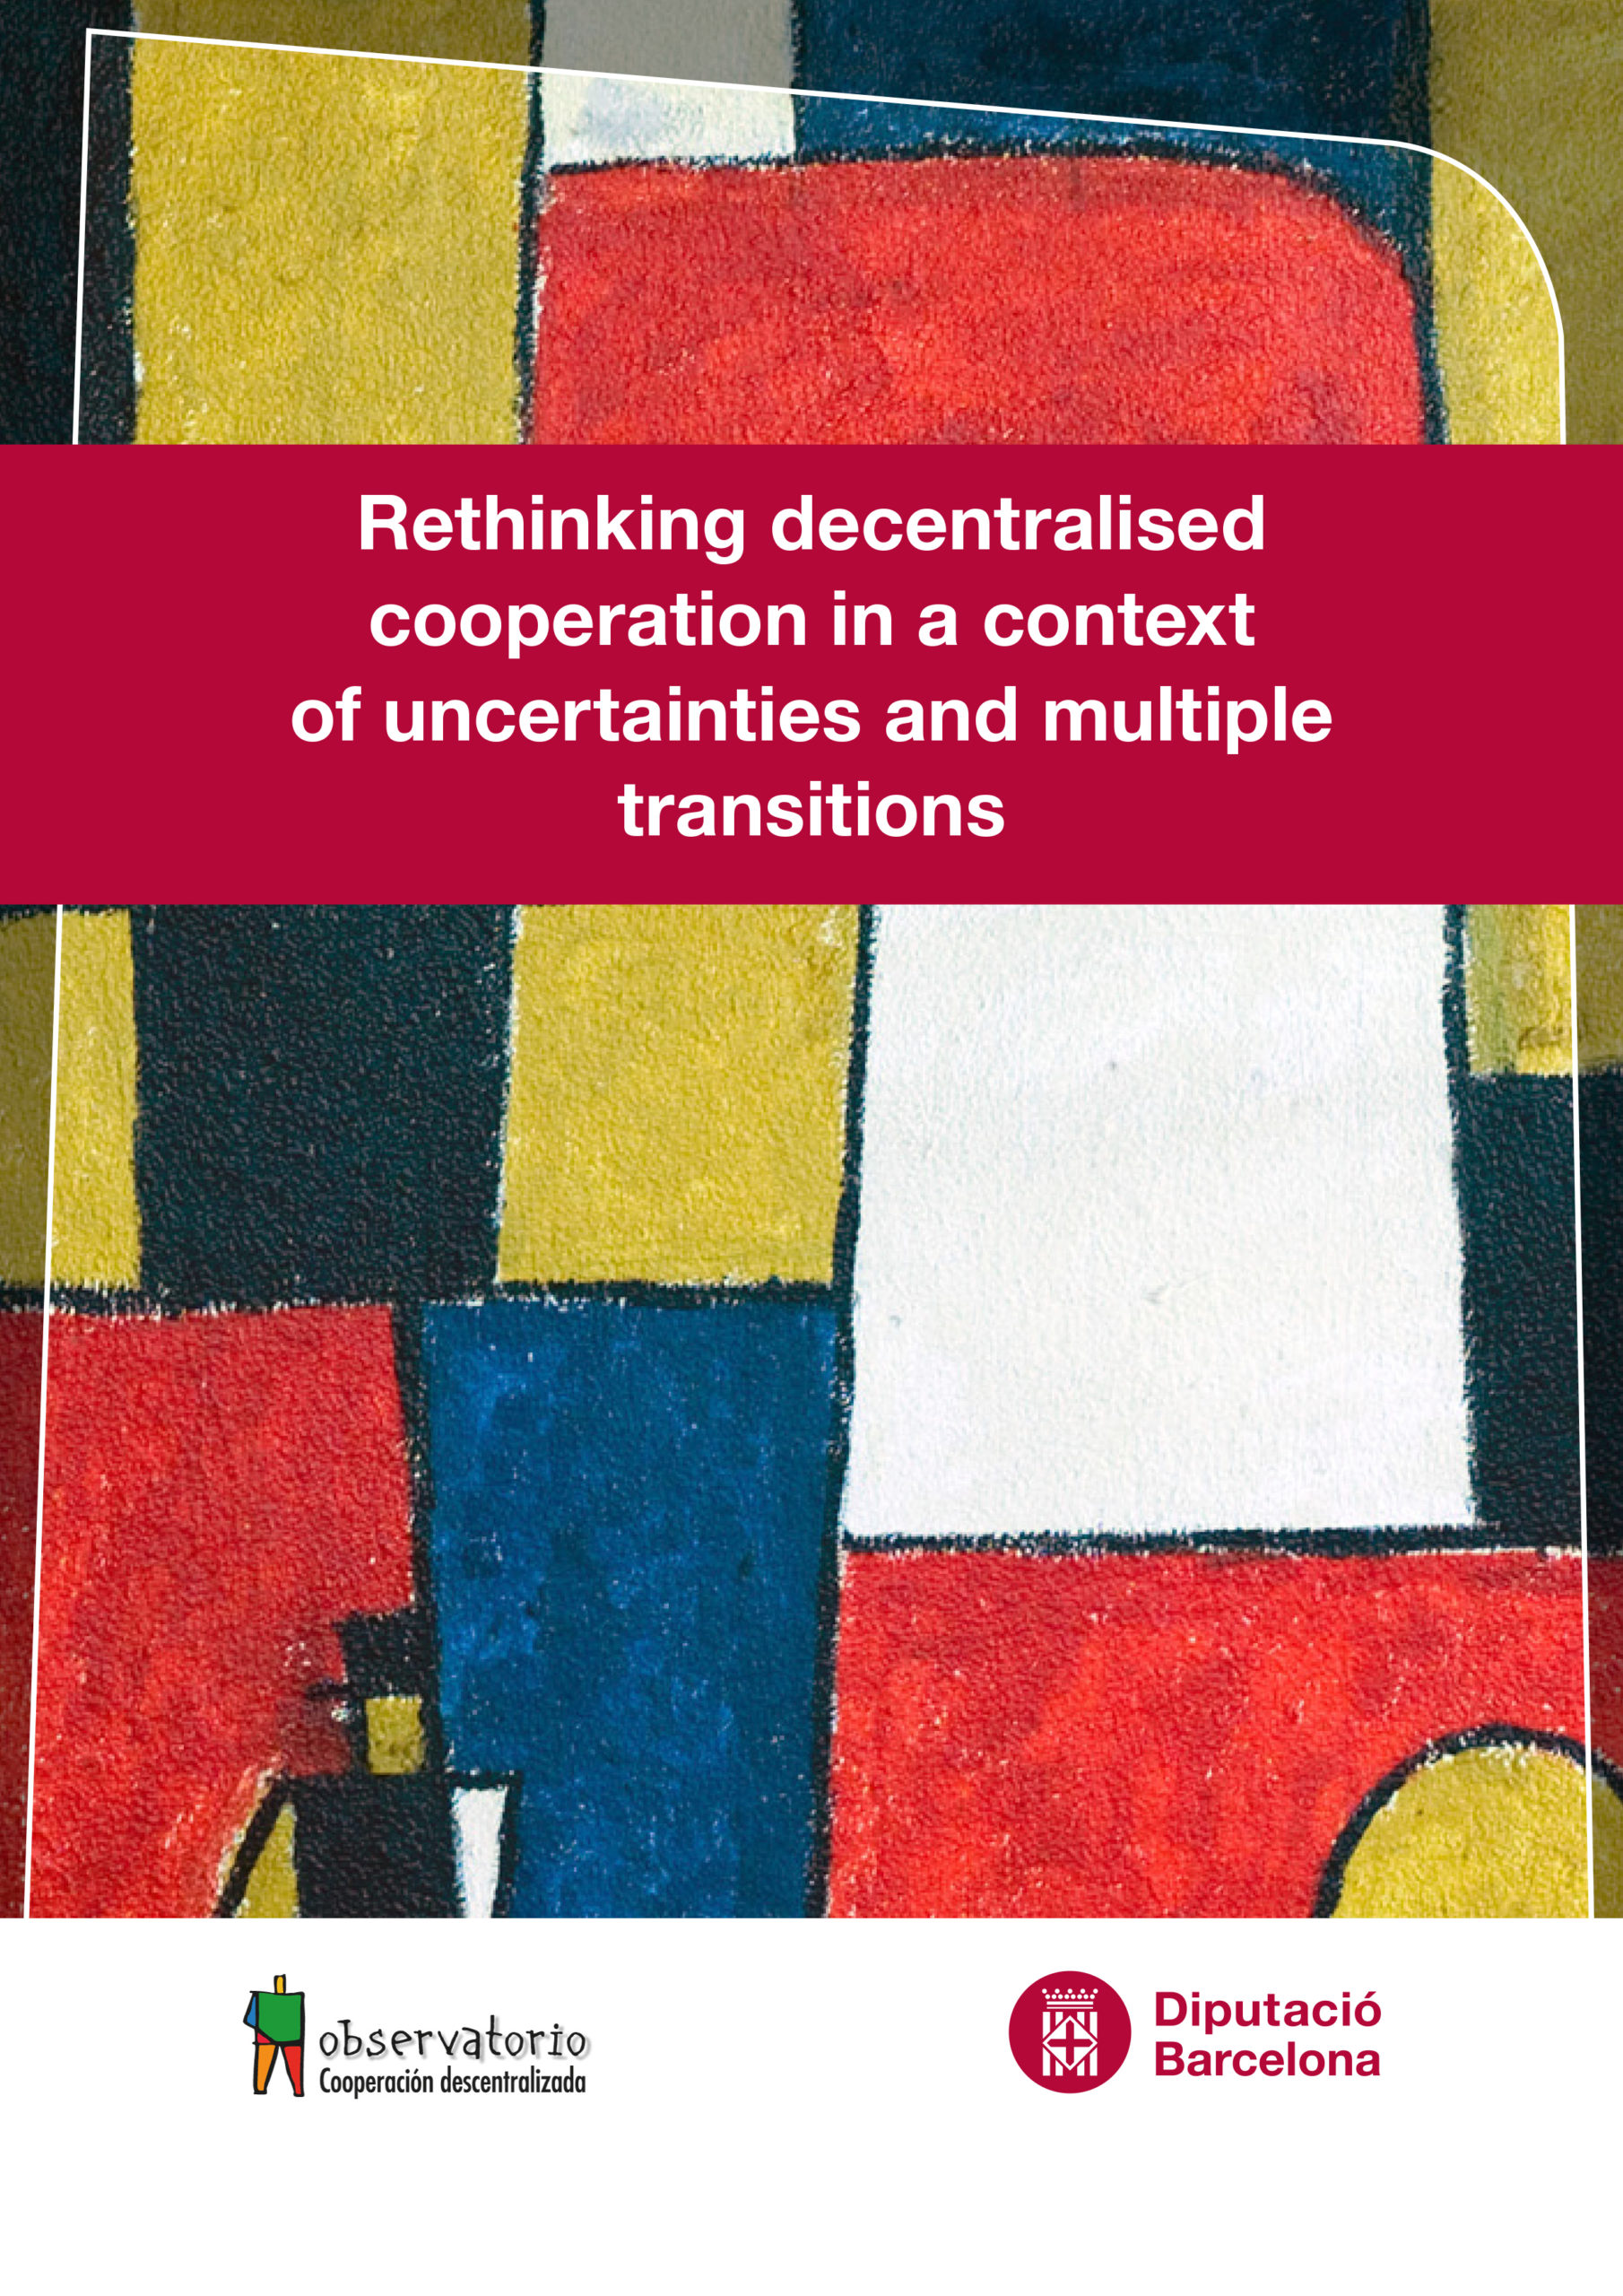 Repenser la coopération décentralisée dans un contexte d’incertitudes et de transitions multiples